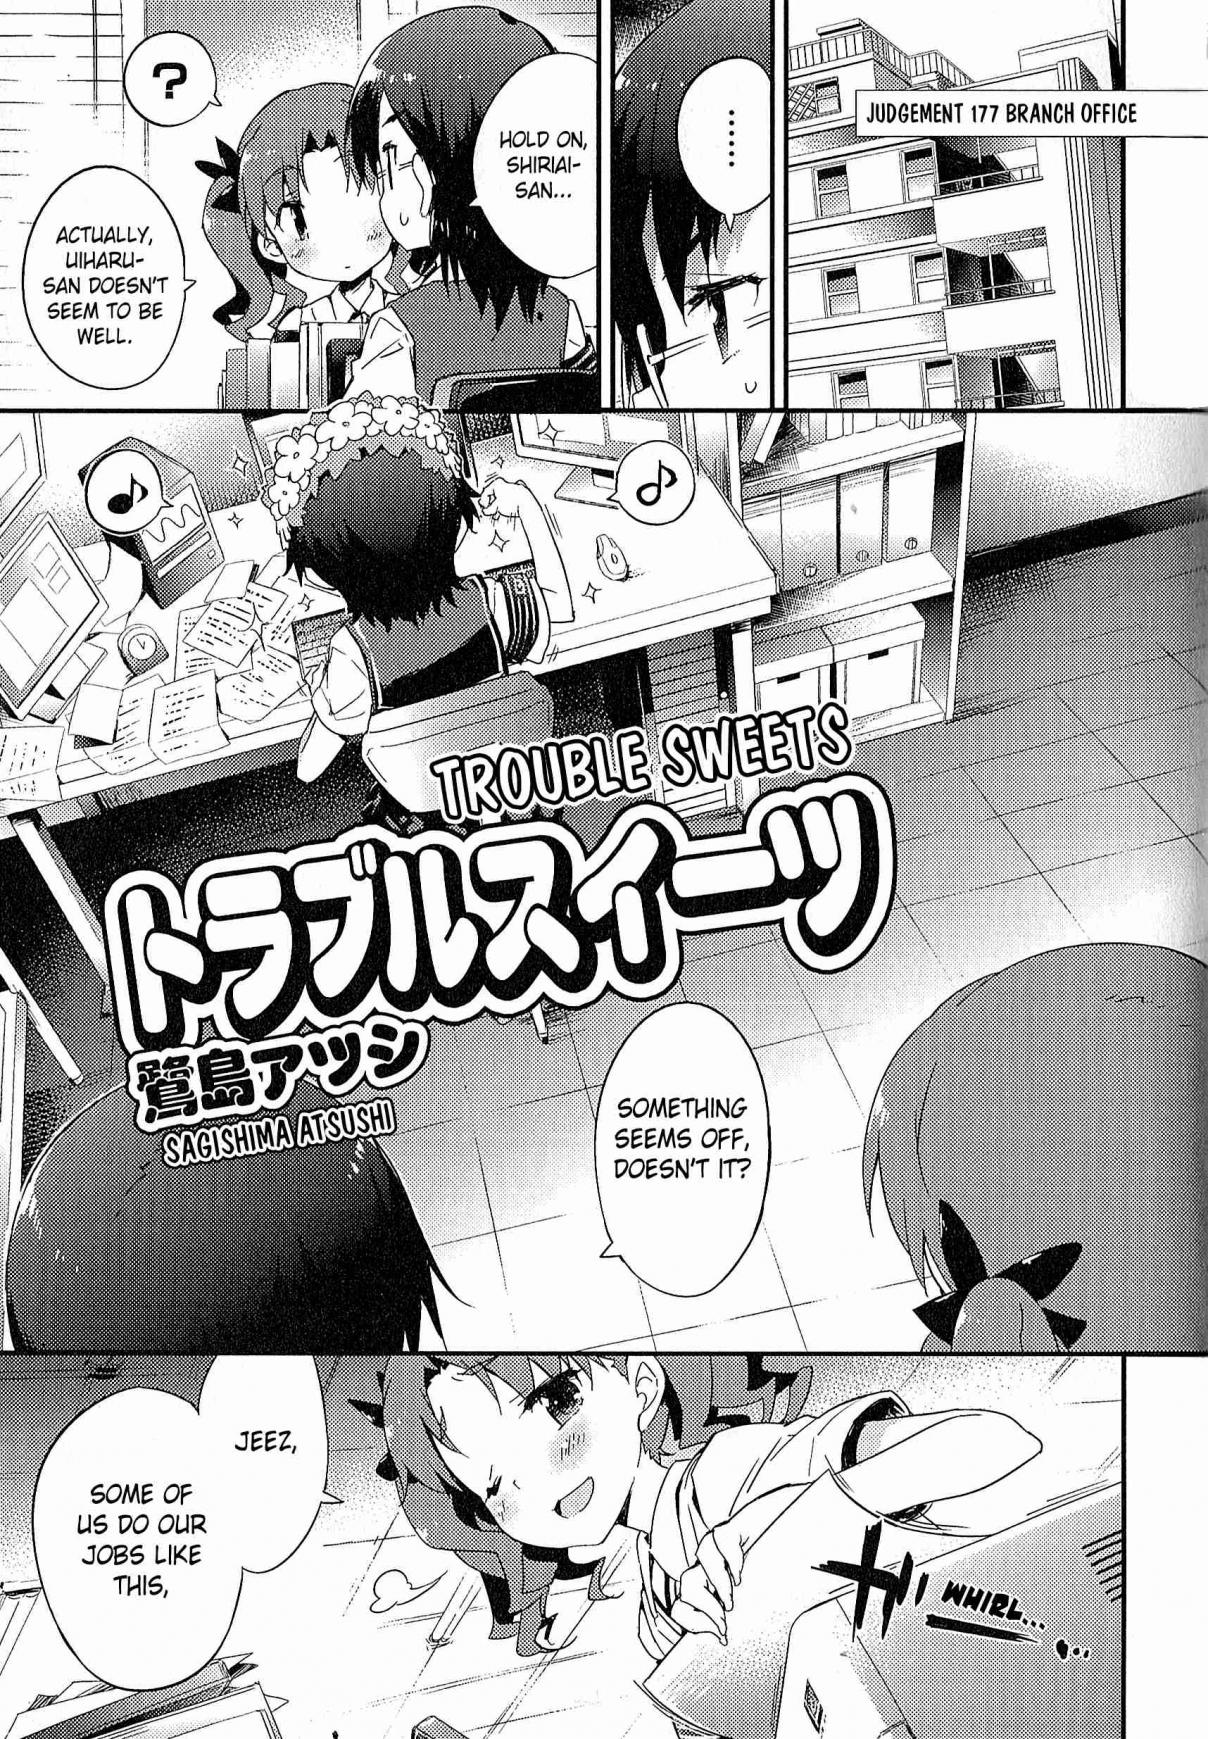 Koushiki Comic Anthology - Toaru Kagaku no Railgun featuring Toaru Majutsu no Index 10